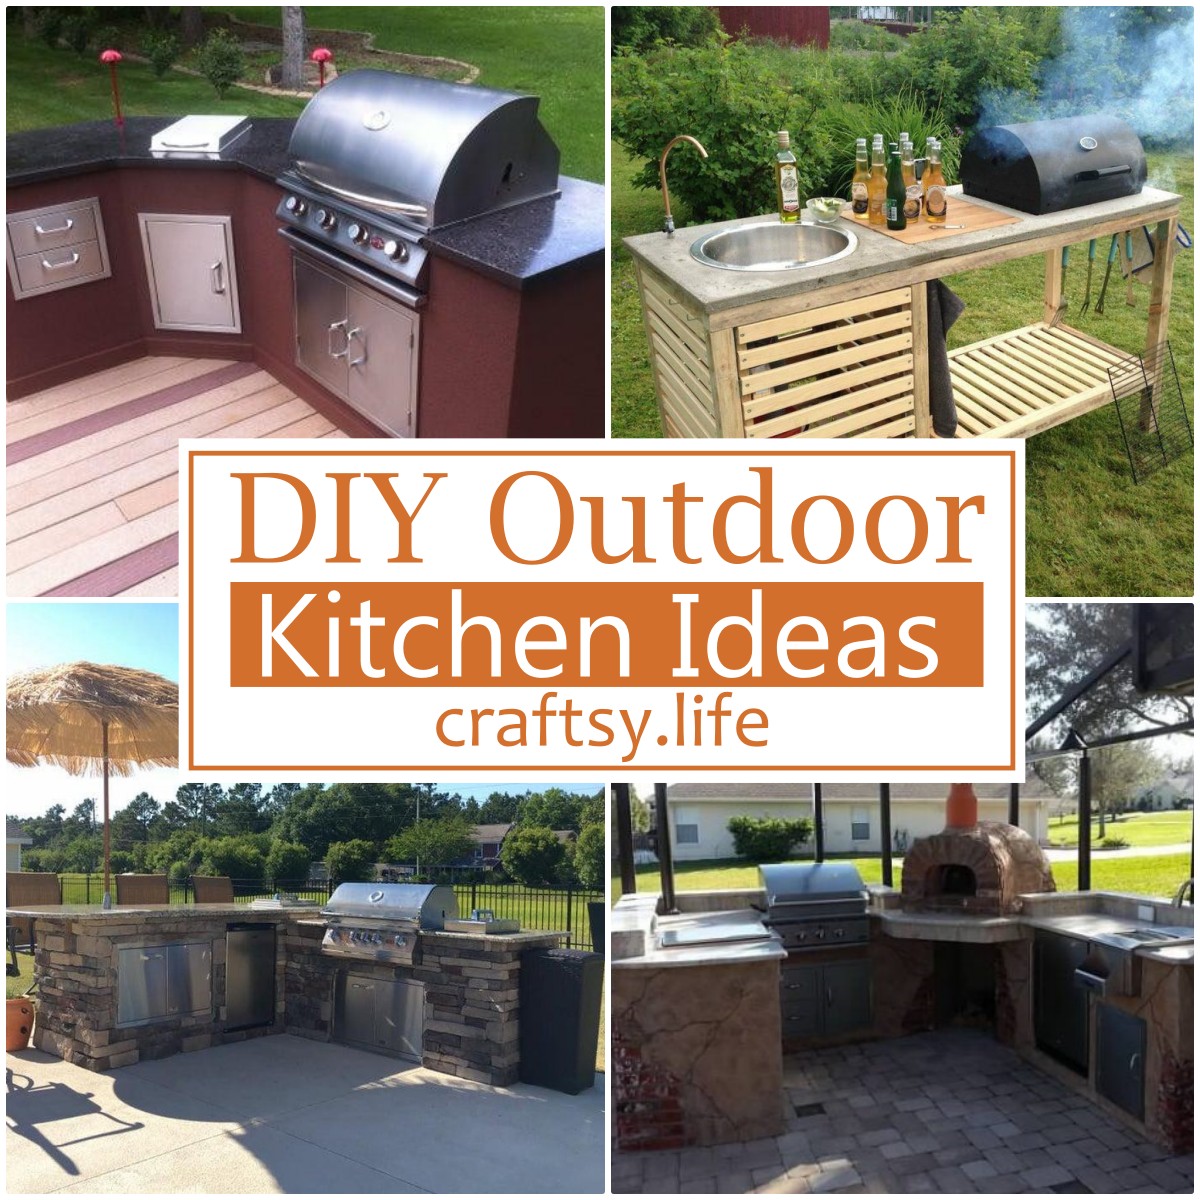 DIY Outdoor Kitchen Ideas